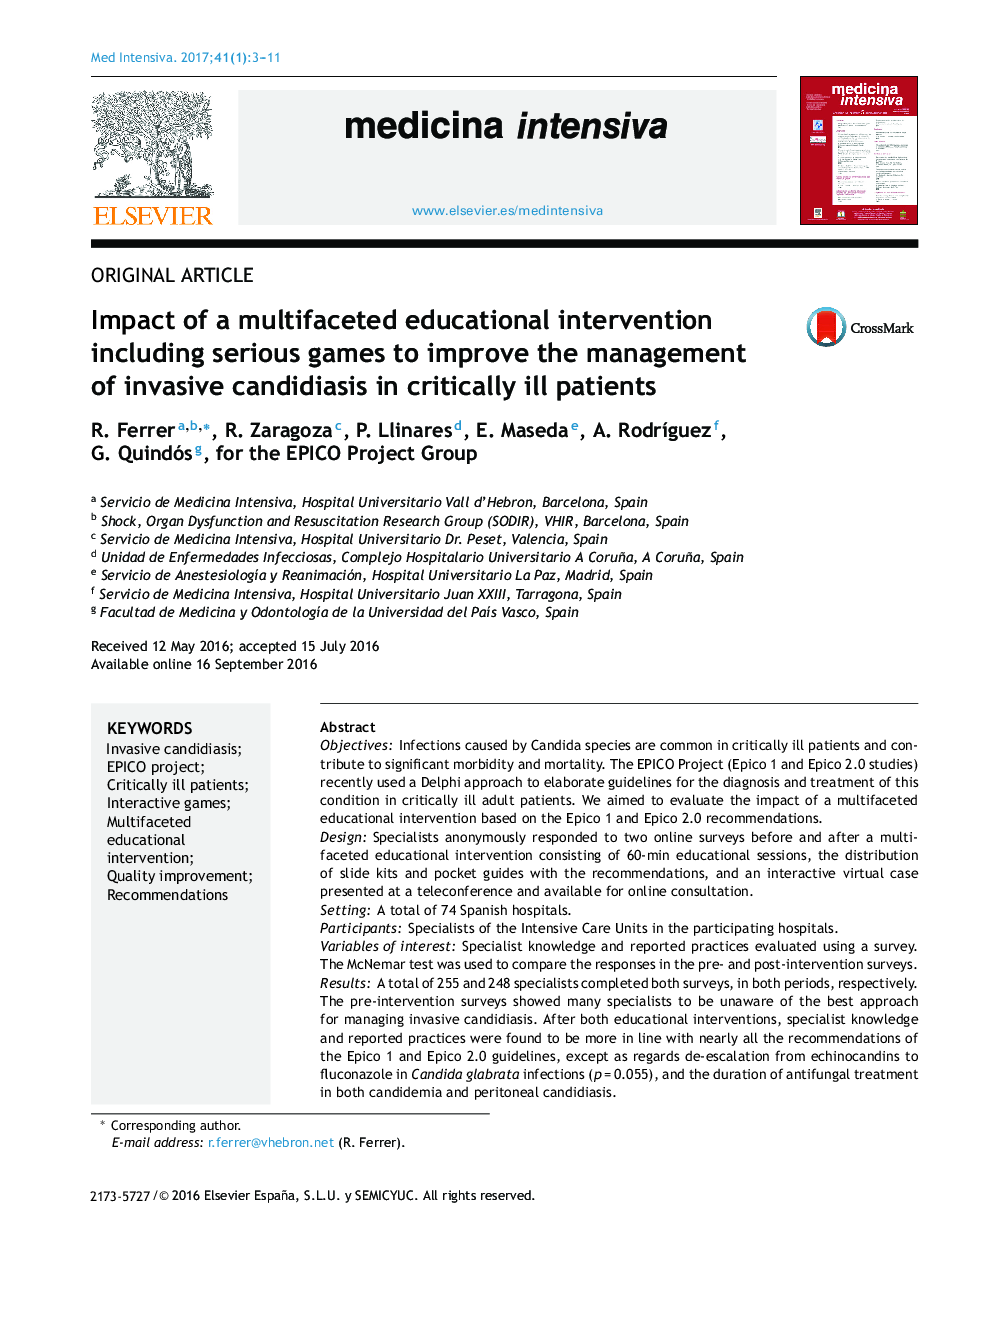 تأثیر یک مداخله آموزشی چندمتغیره از جمله بازی های جدی برای بهبود مدیریت کاندیدیازیس تهاجمی در بیماران مبتلا به بحرانی 